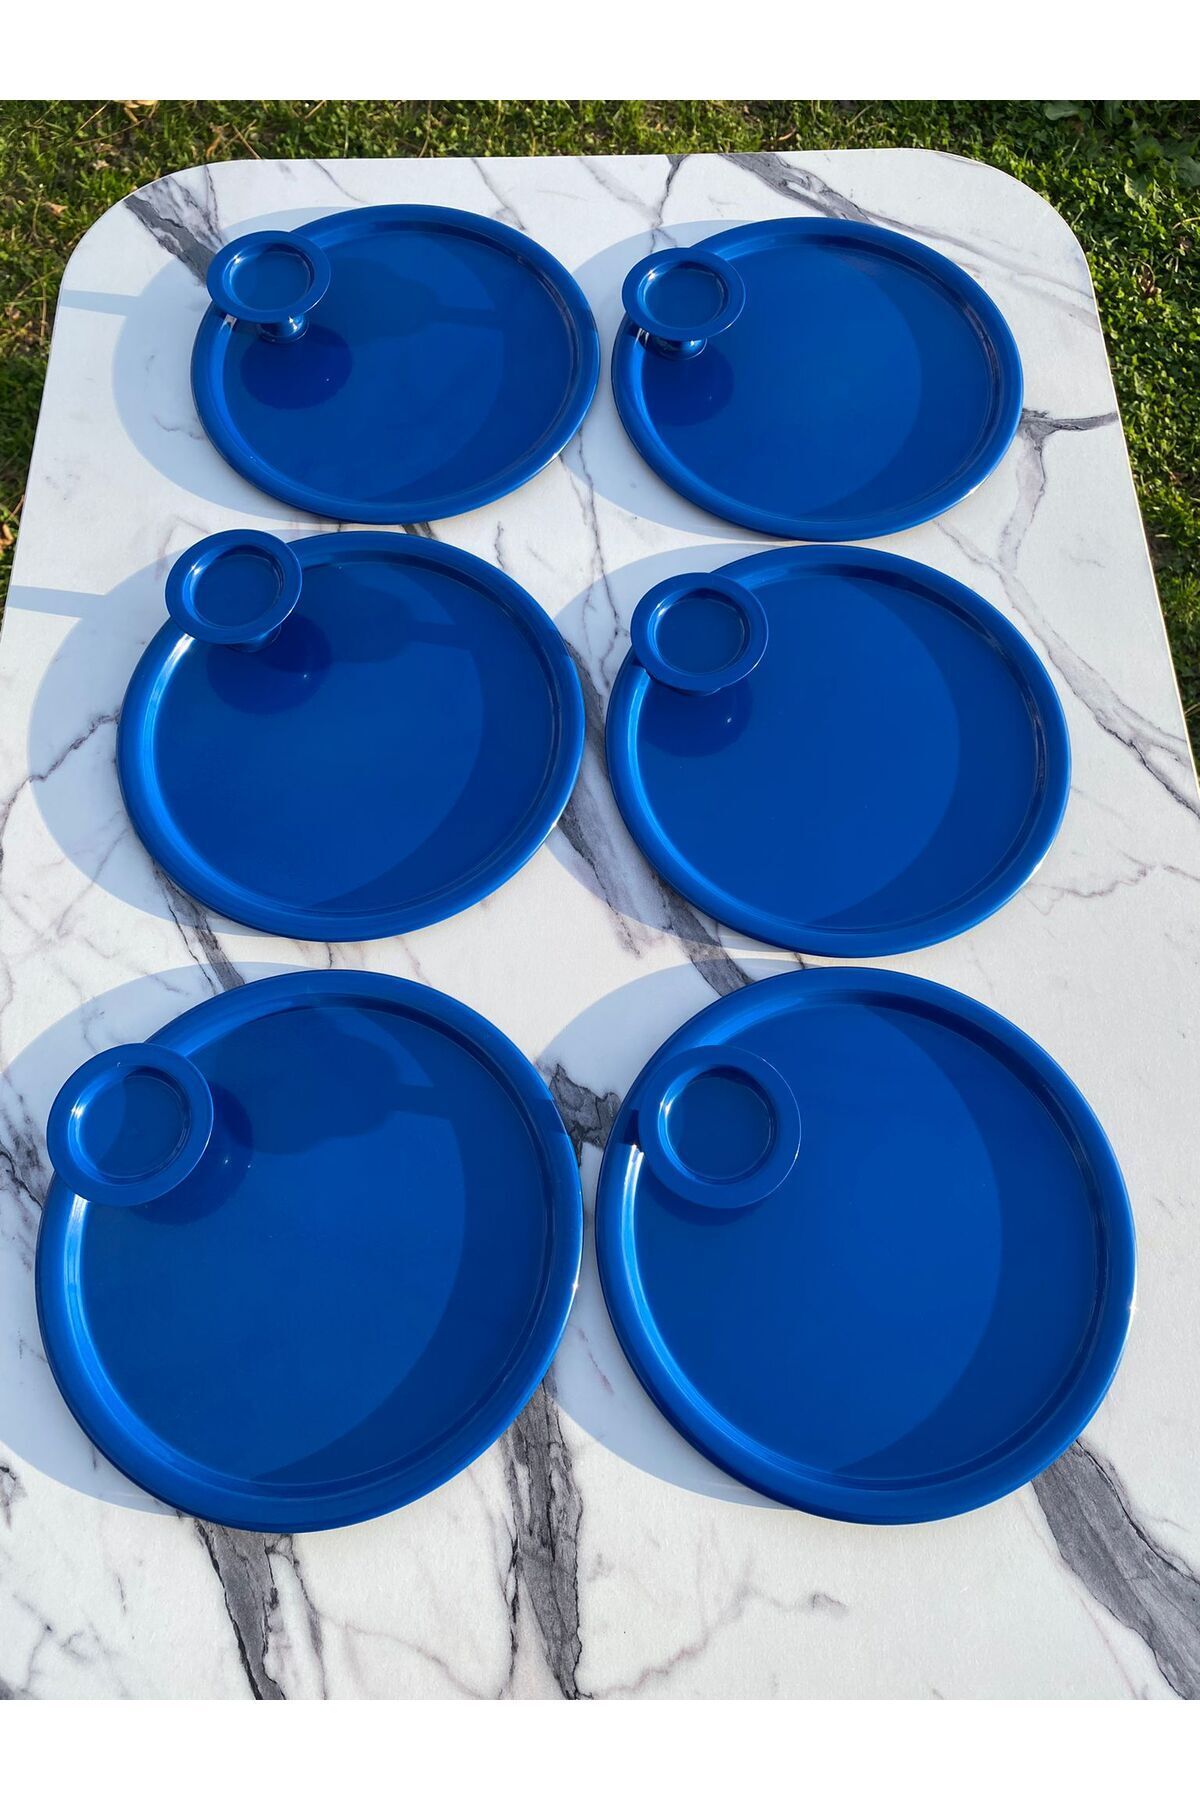 Aslı Hediyelik 2 Model 6'lı Mavi Yuvarlak Tepsi Ve 6'lı Mavi Makaronluk Kahve Ve Pasta Servisi Sunum Tepsisi